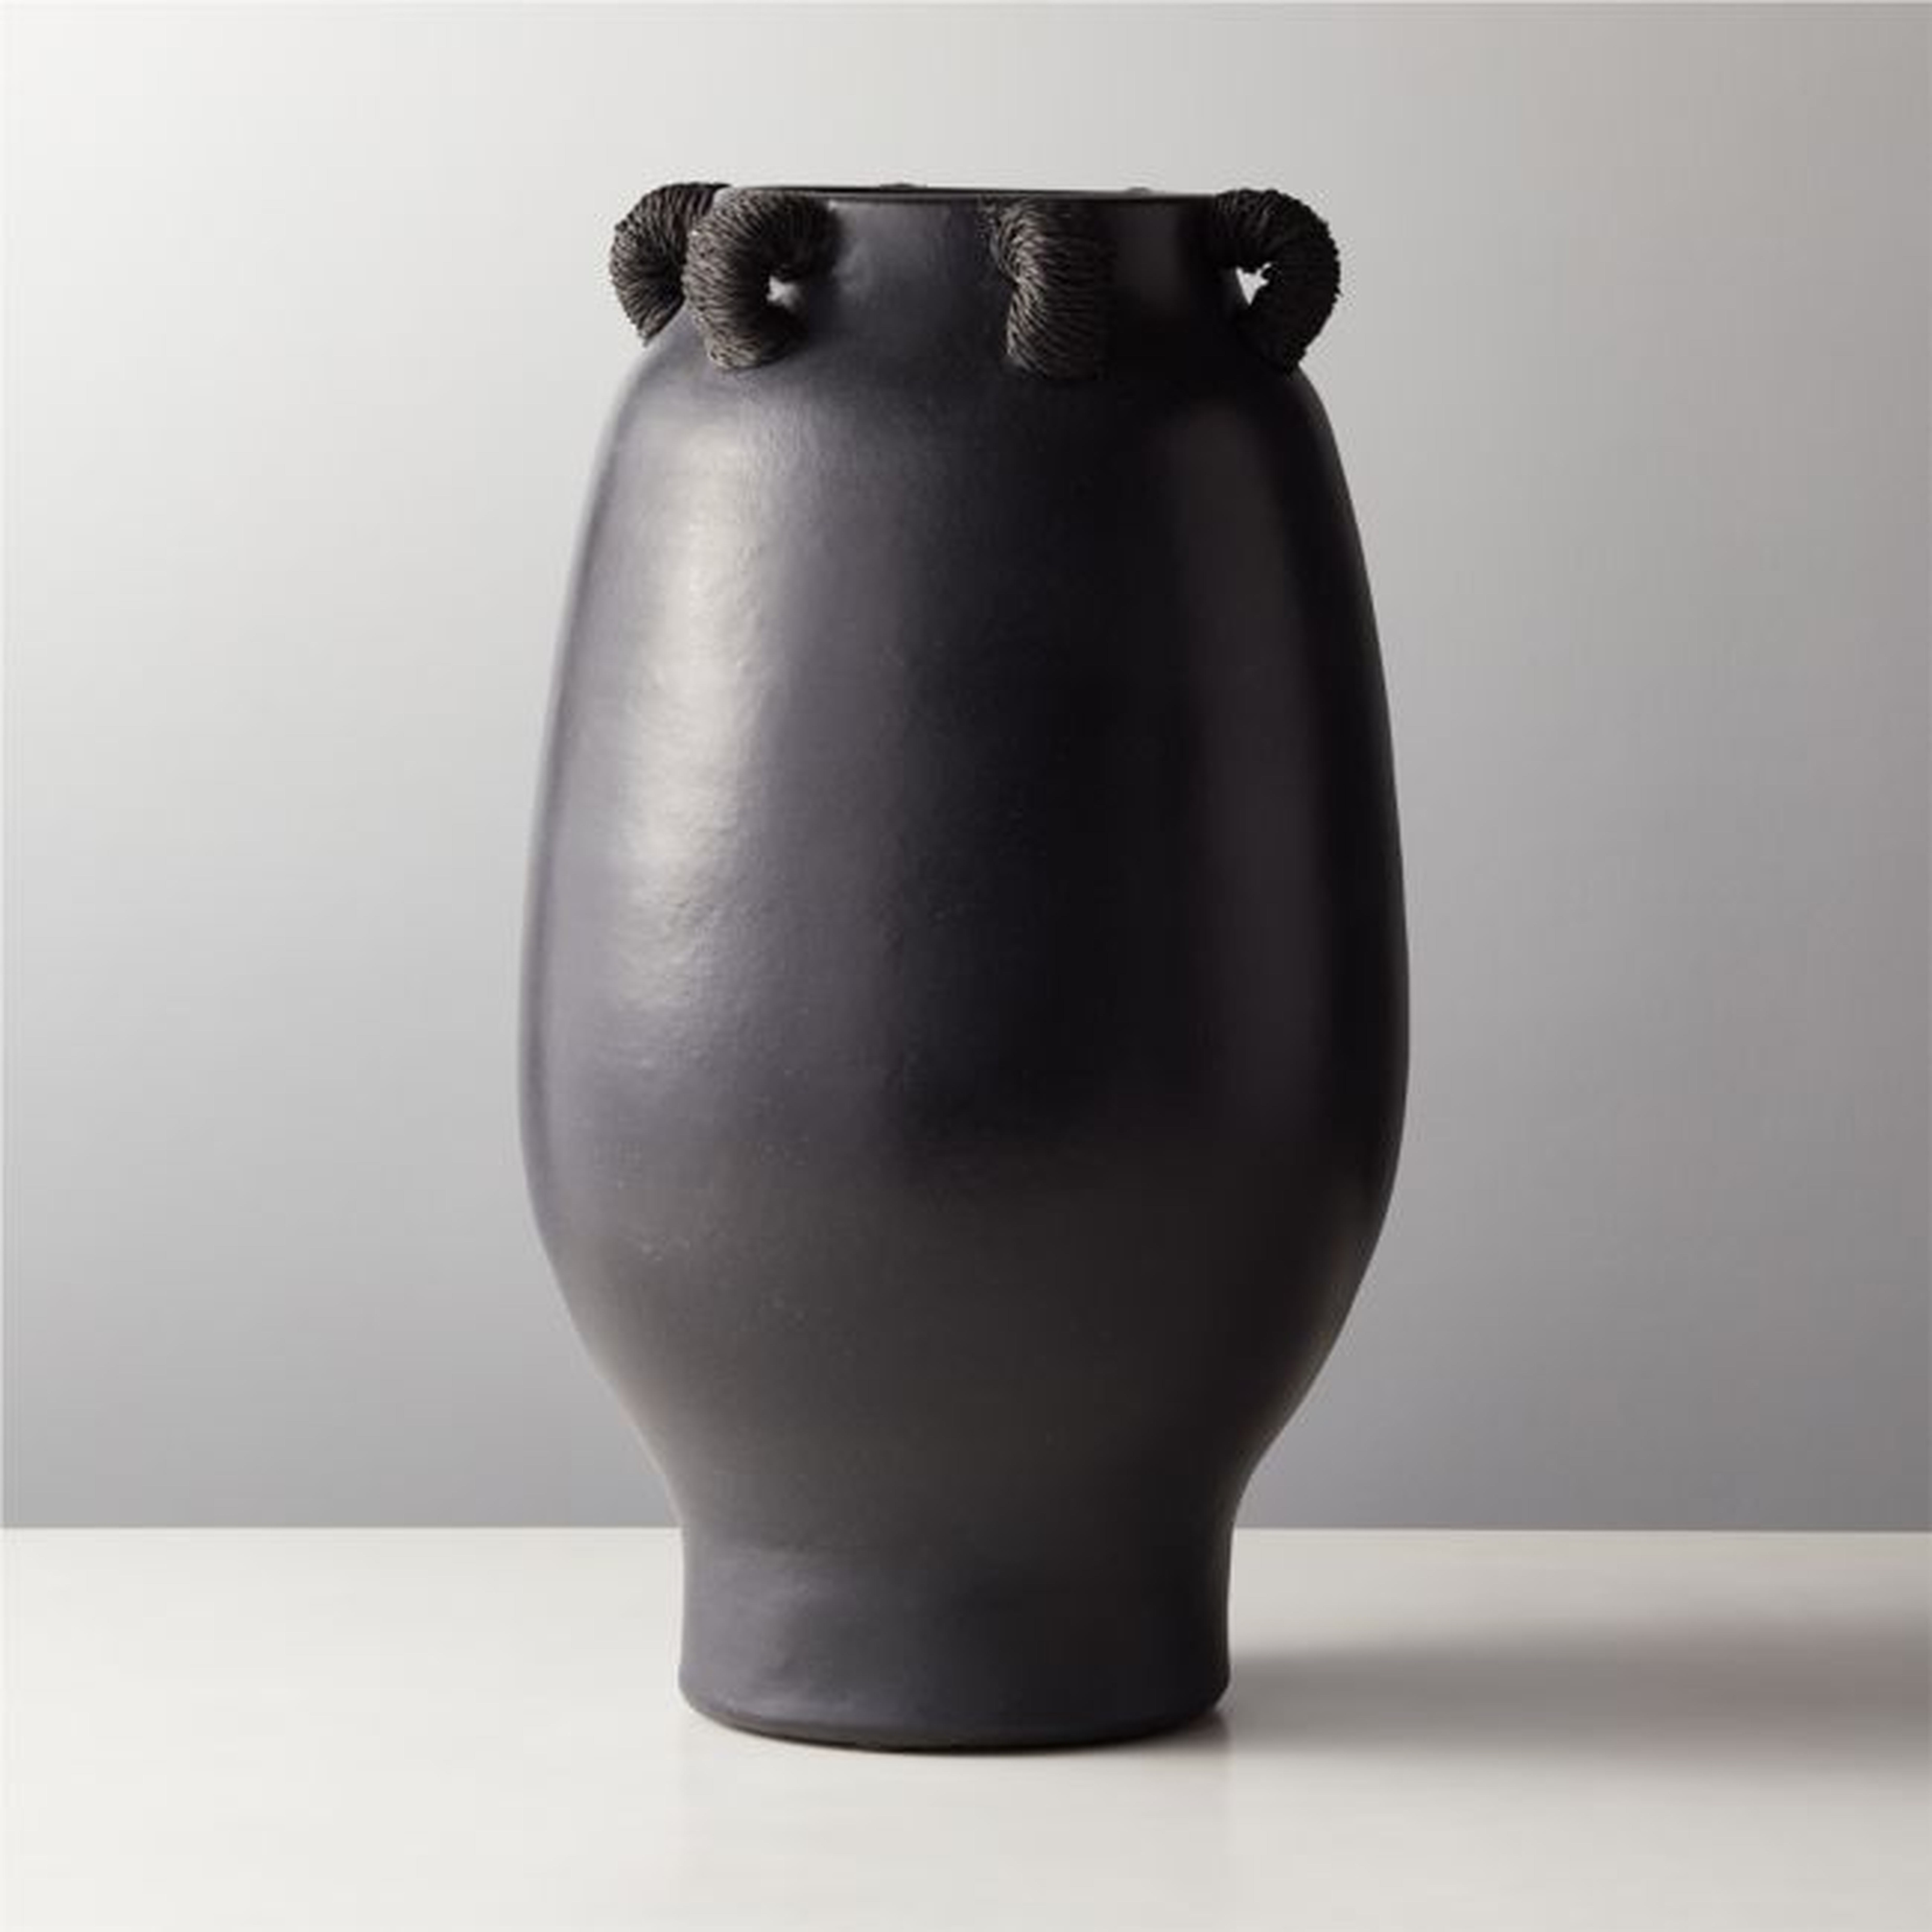 Acadia Black Ceramic Vase - CB2